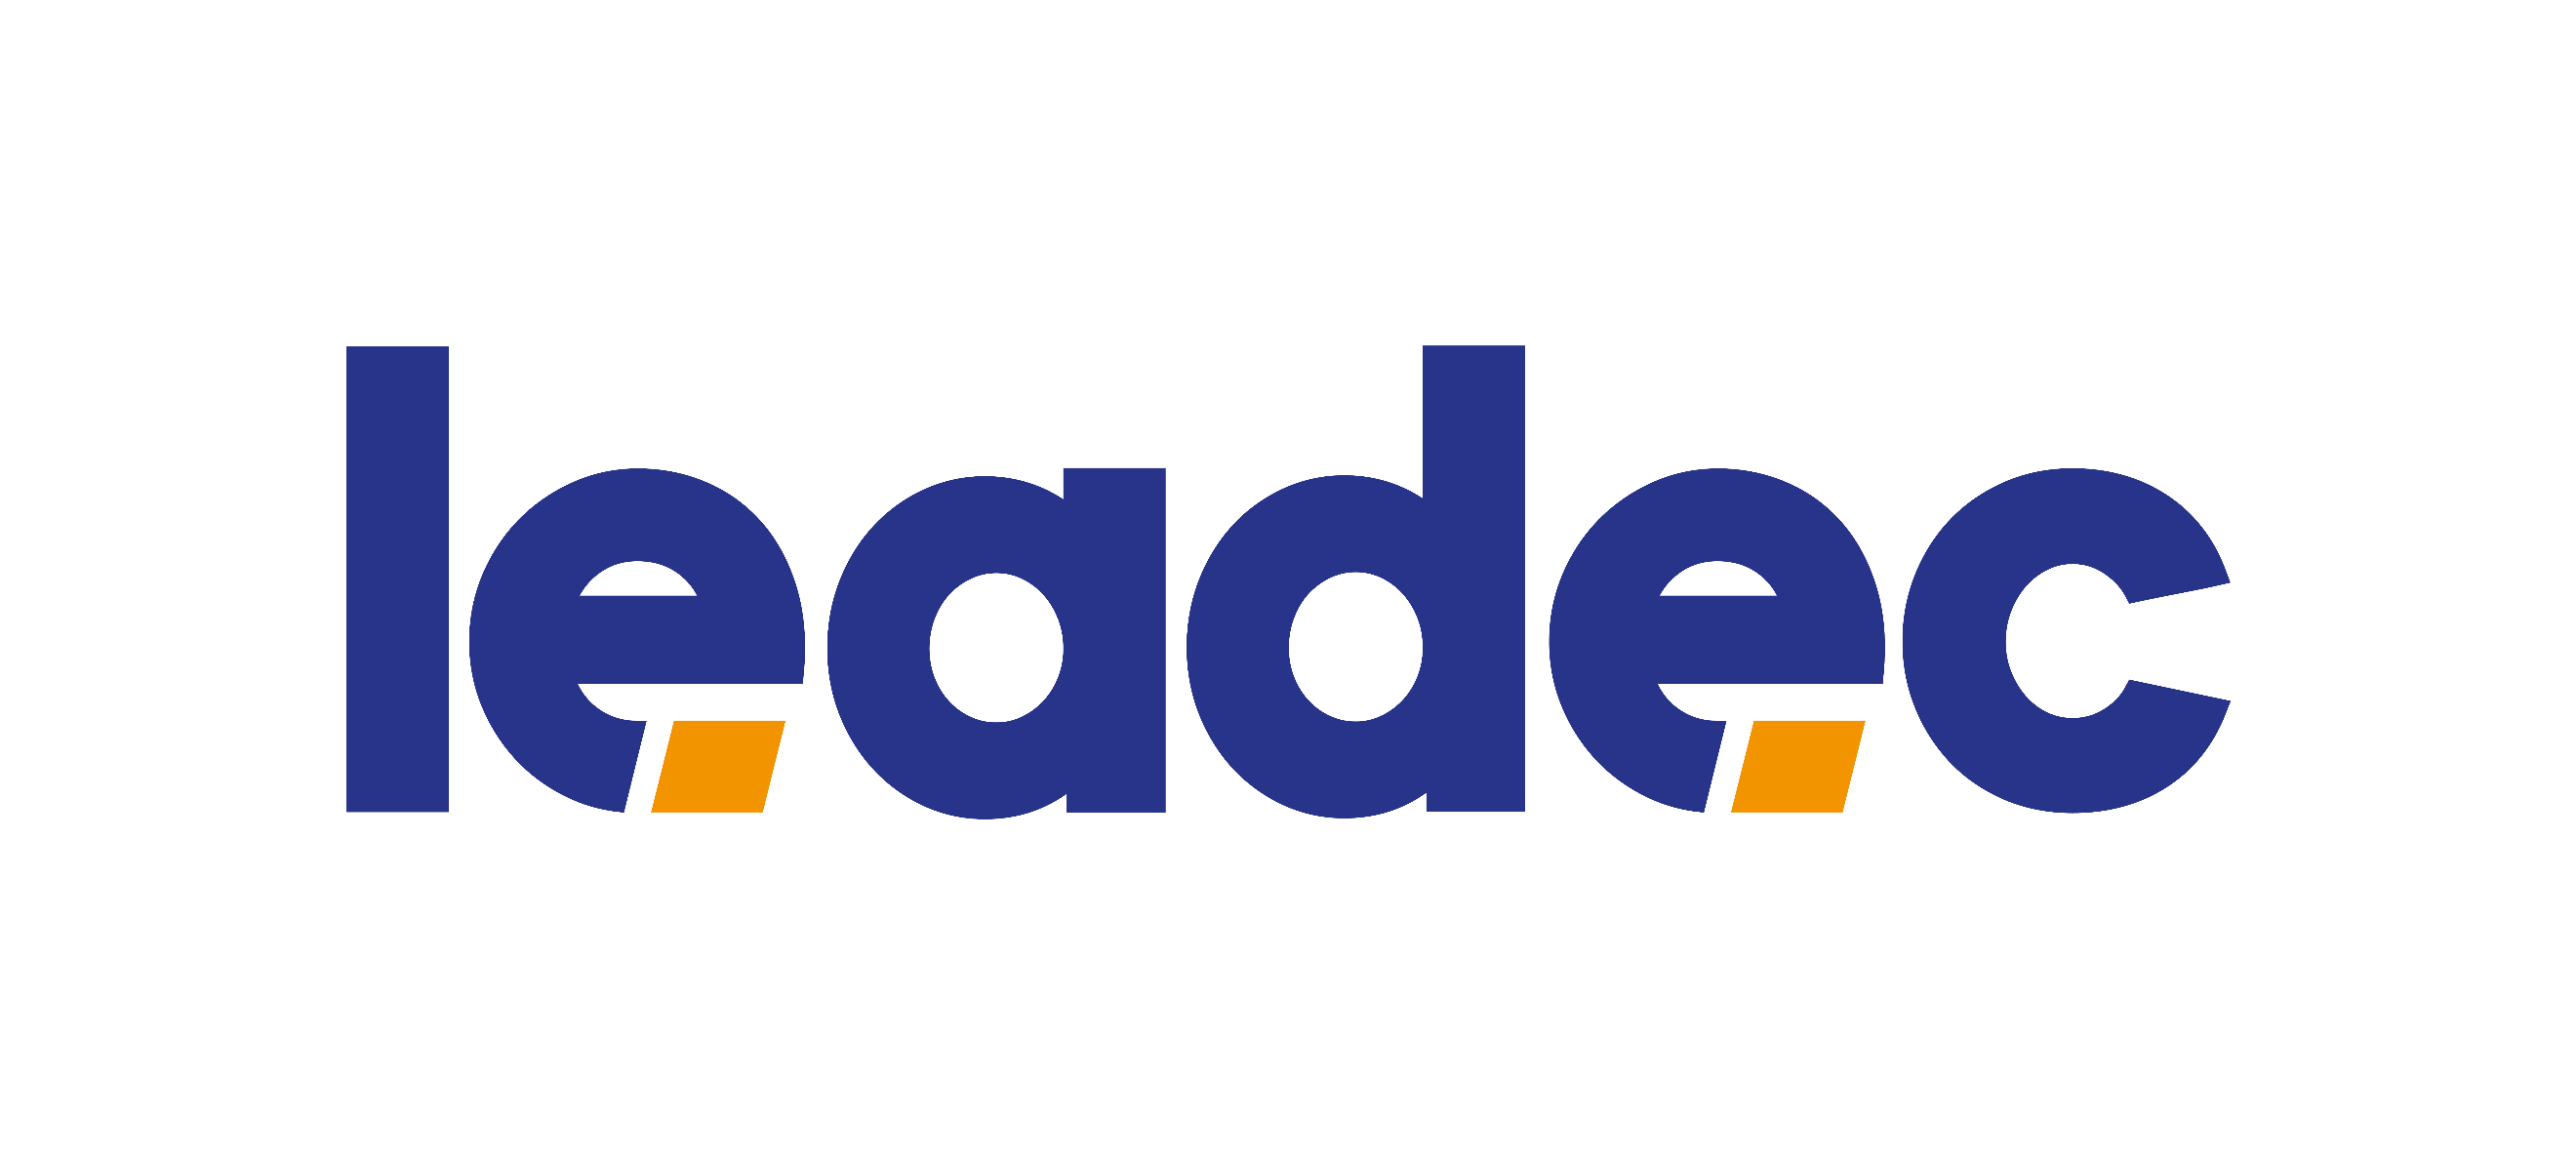 leadec Industrial Services logo